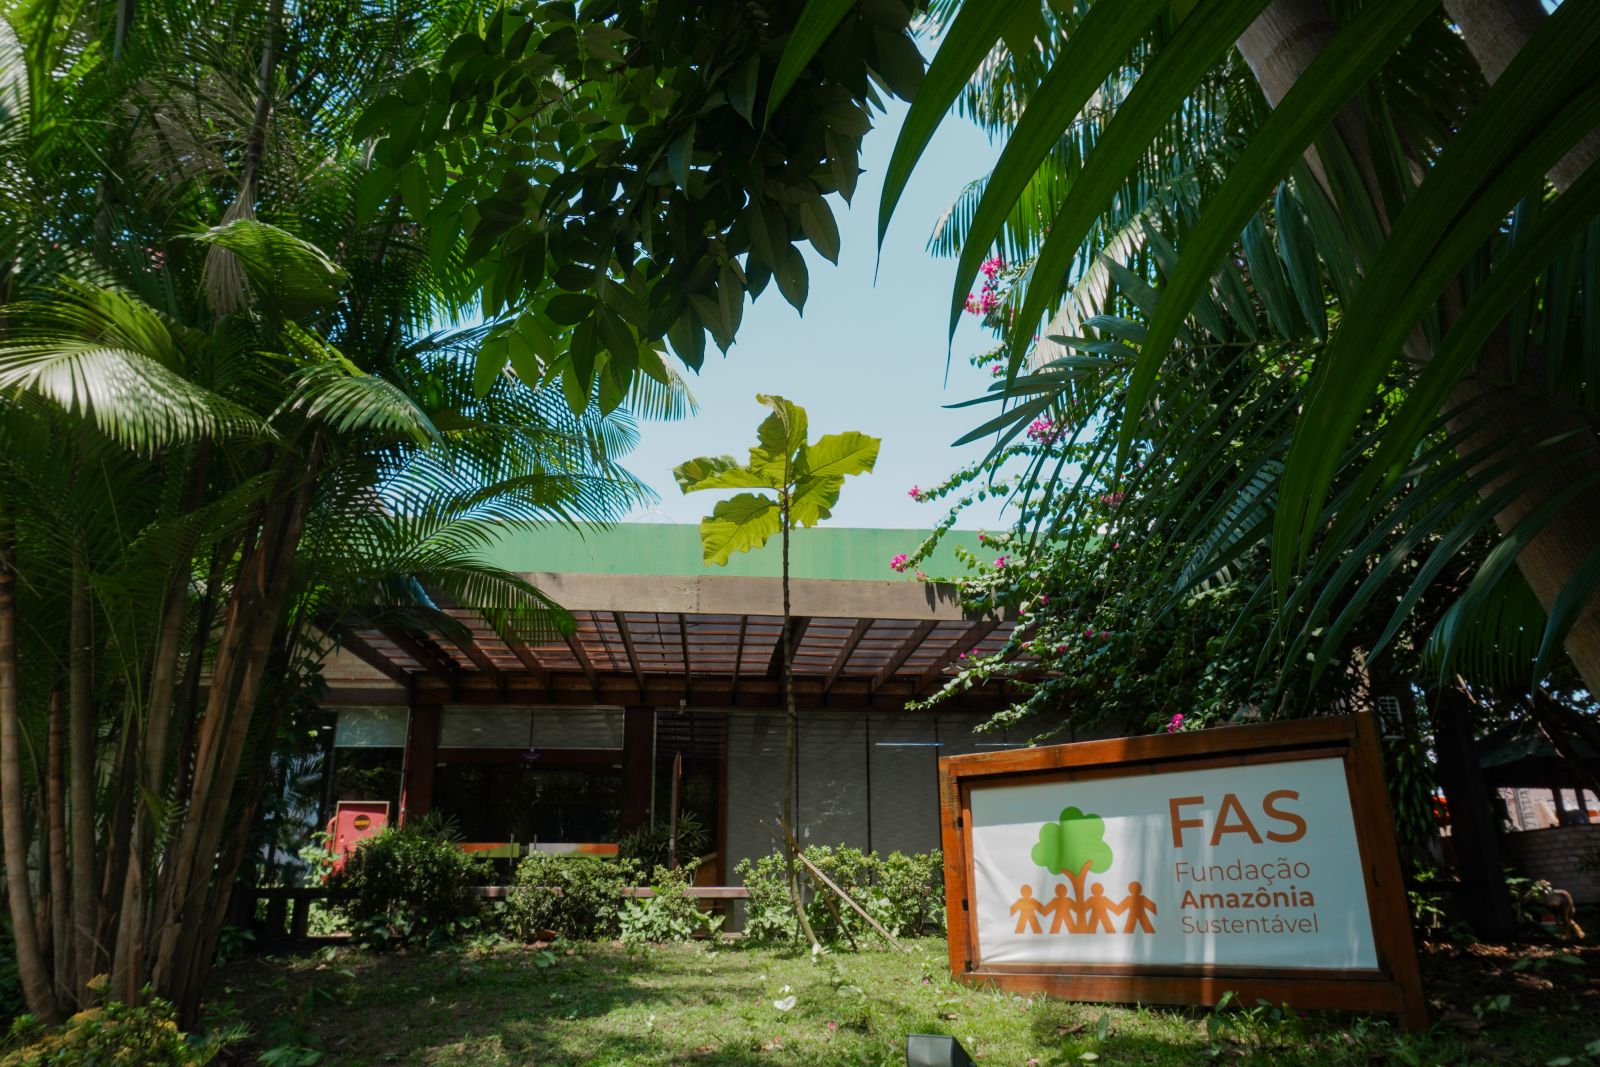 O evento ocorre até domingo (11/6), na sede da Fundação Amazônia Sustentável (FAS)